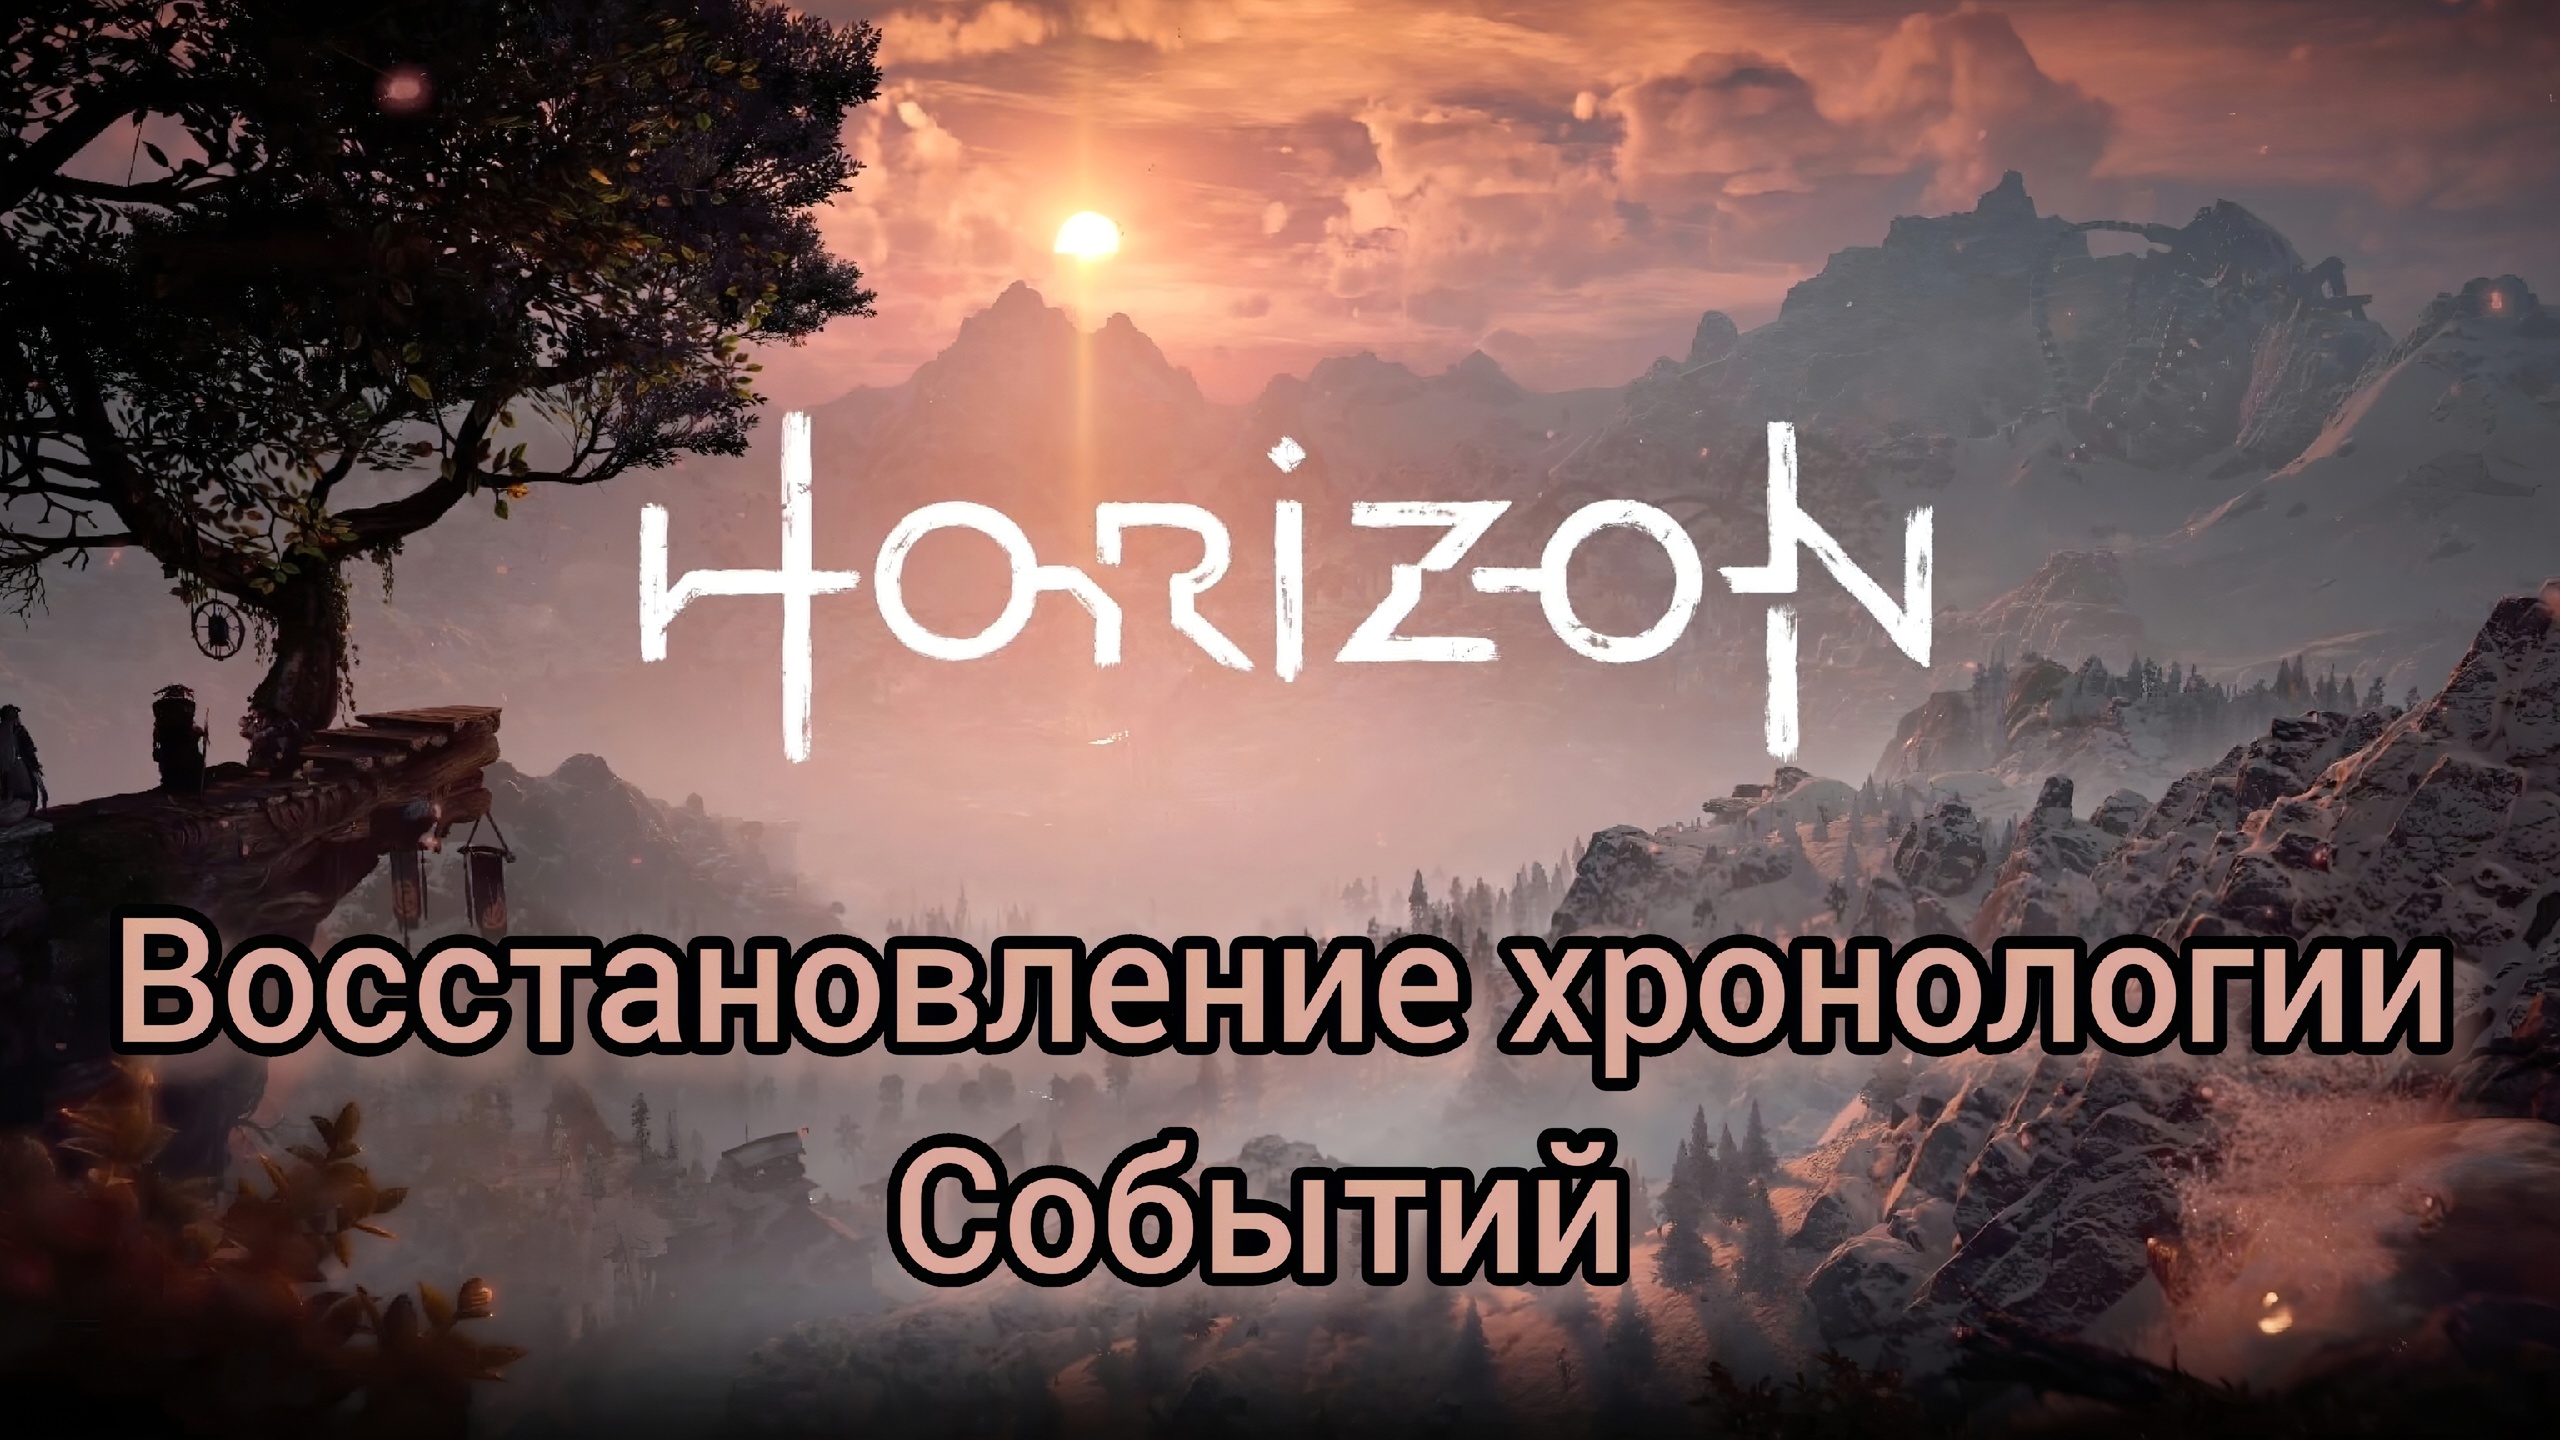 Horizon Zero Dawn™ Complete Edition Восстановление Хронологии Событий Dwers прохождение #13